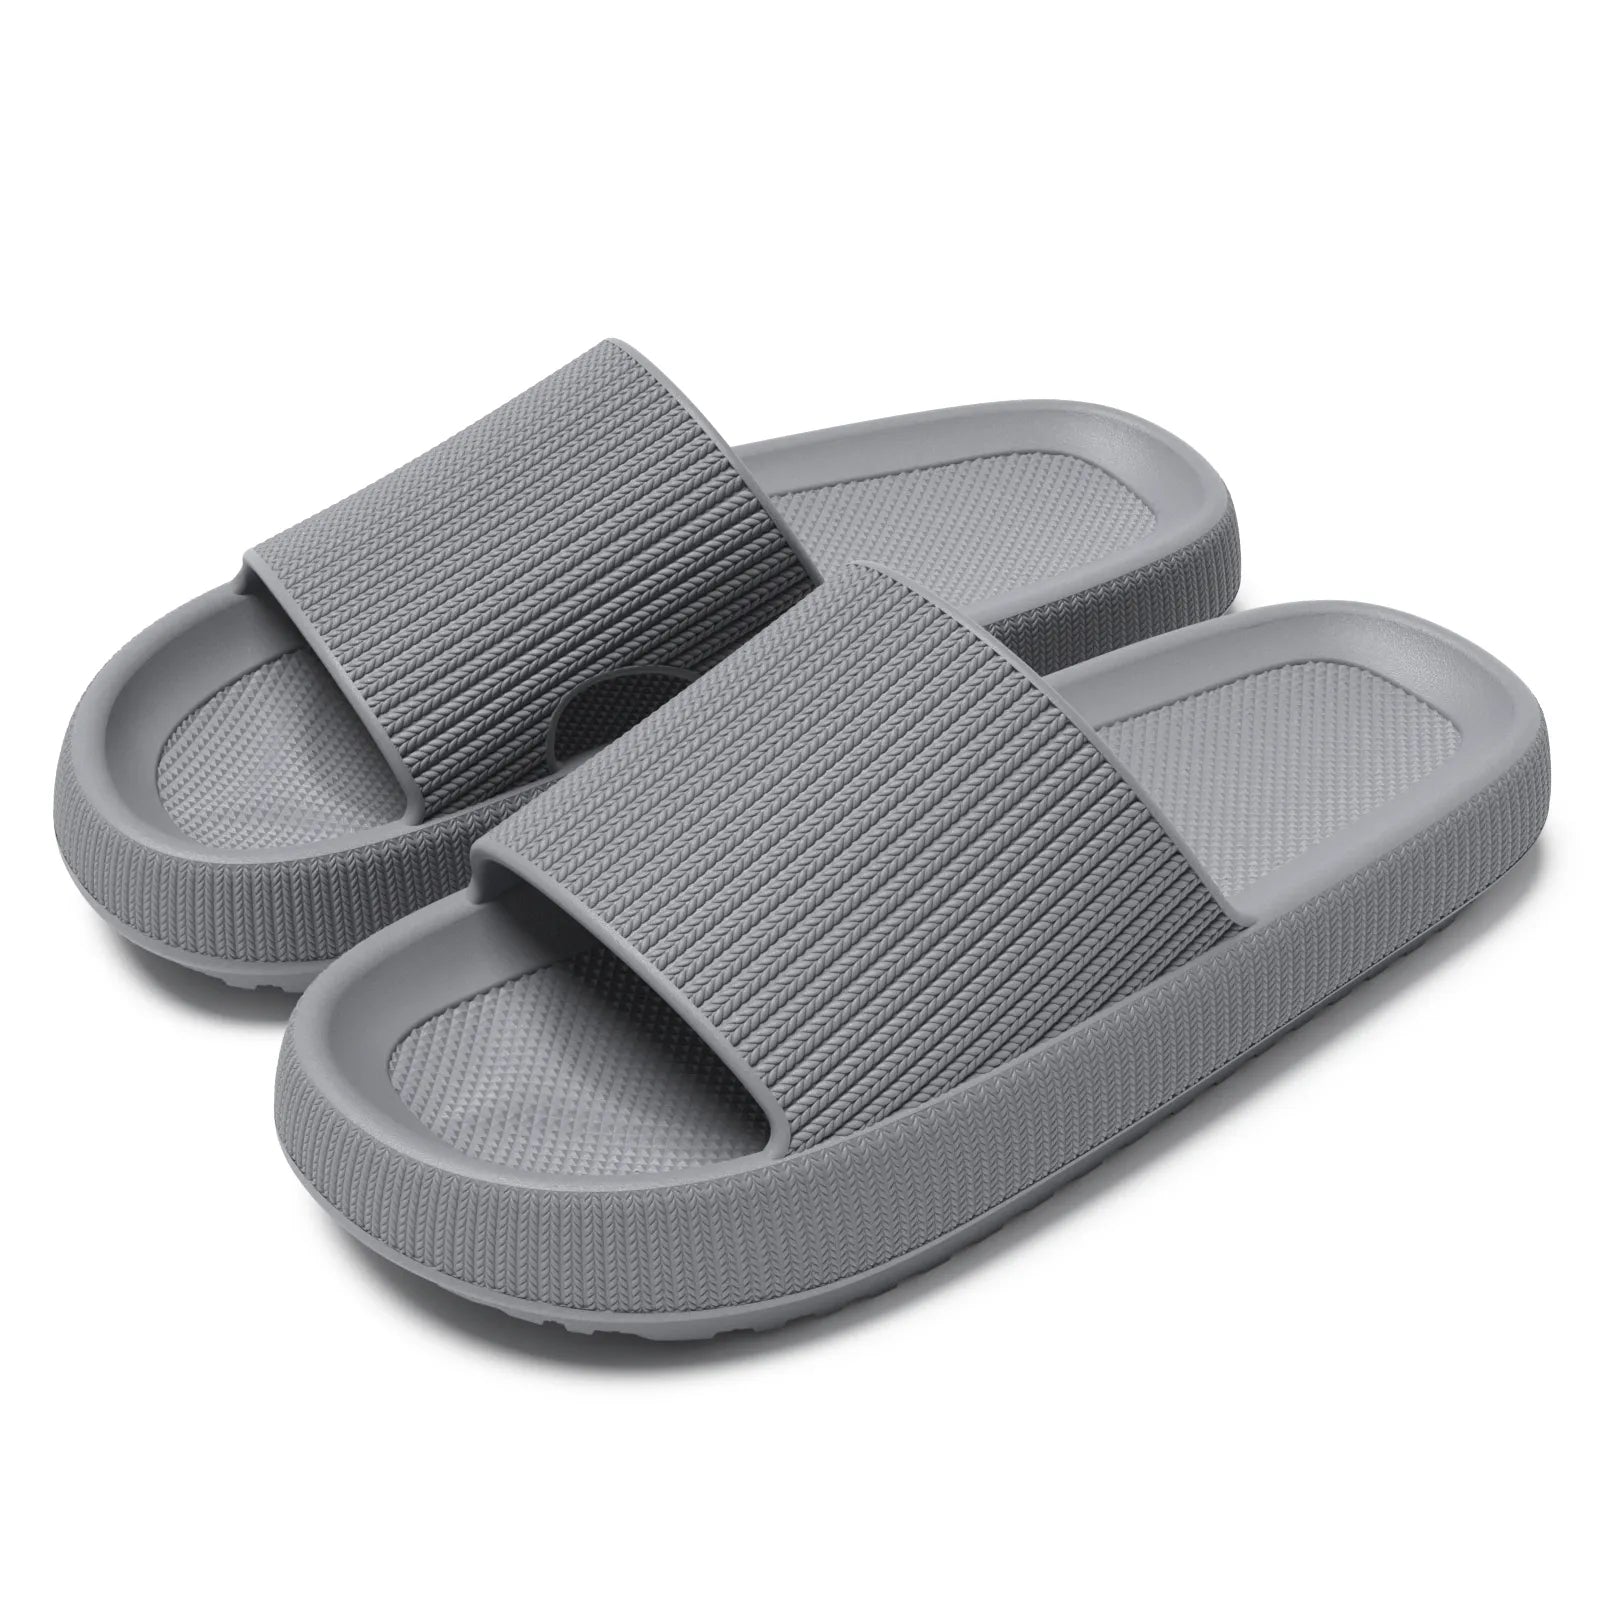 Vrouwen platform slippers - Comfortabele zomer sandalen met zachte eva zool - Bivakshop